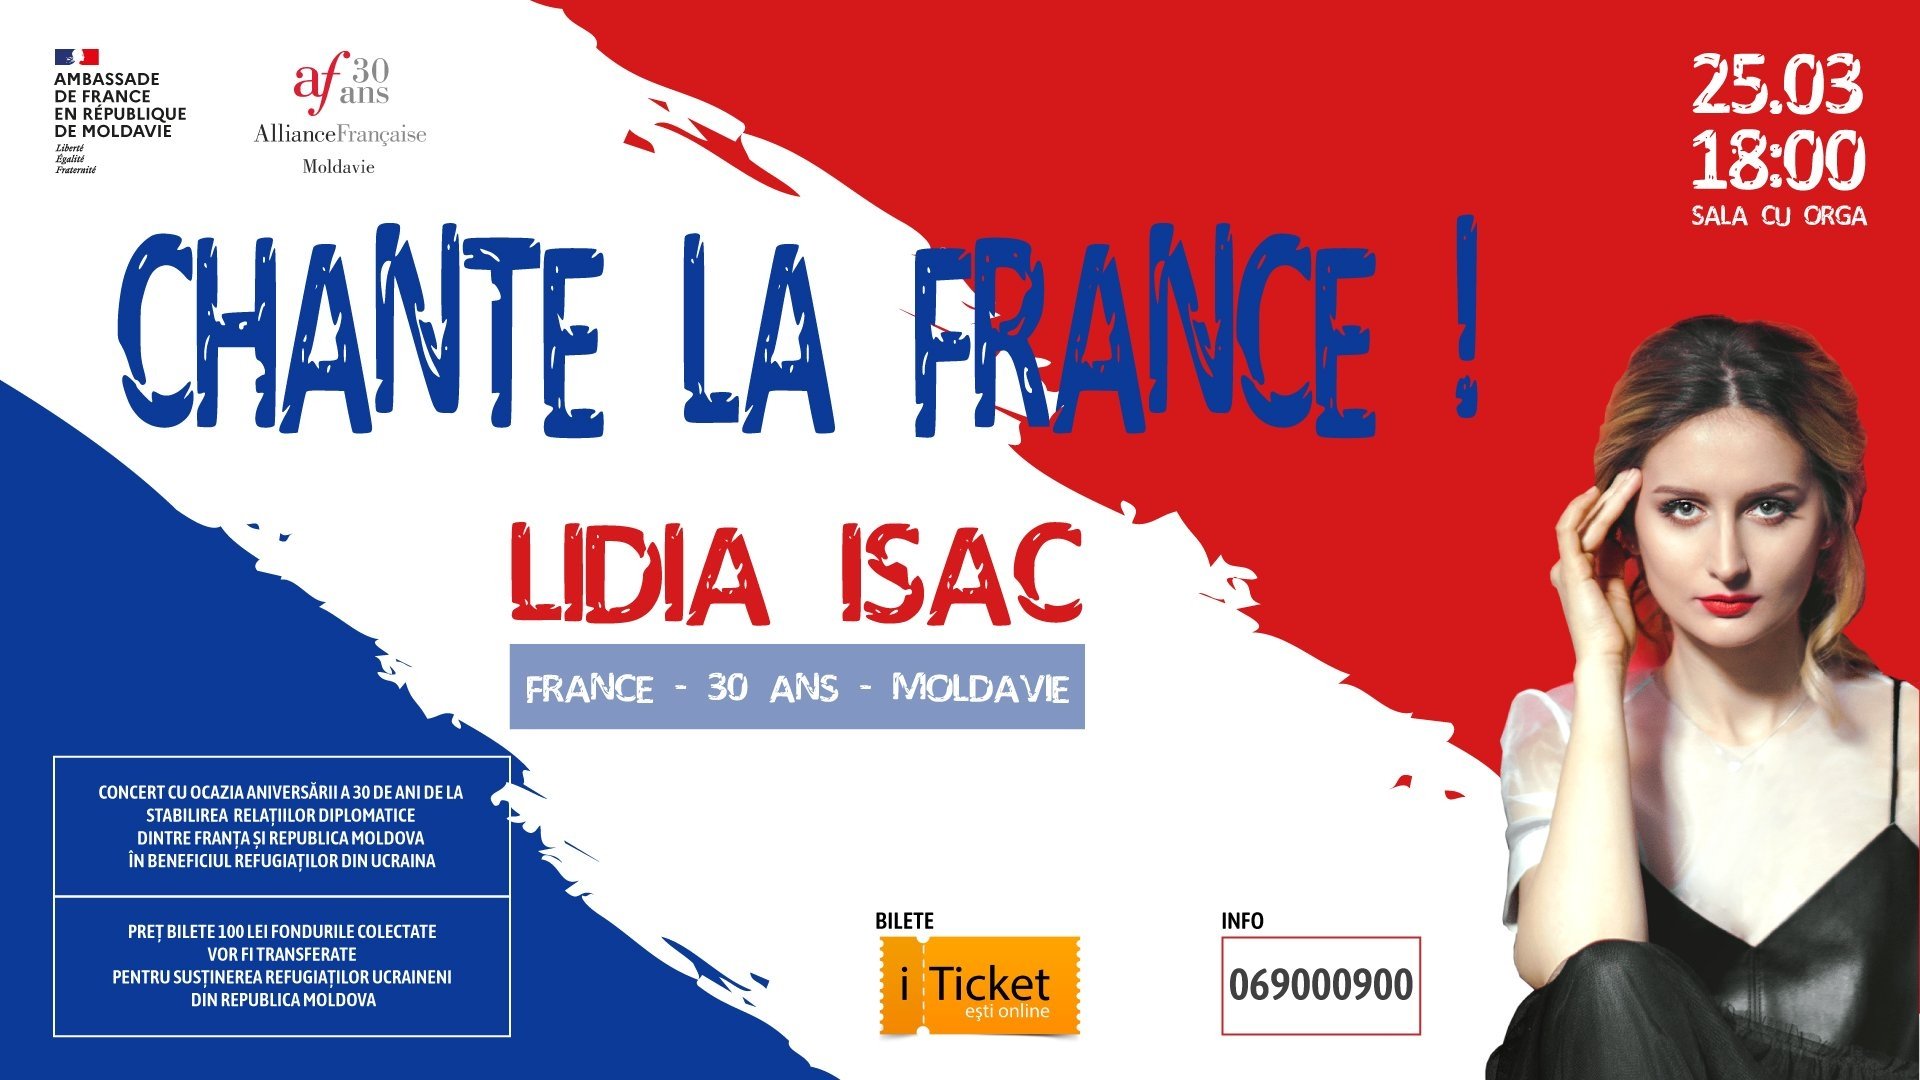 LIDIA ISAC - CHANTE LA FRANCE